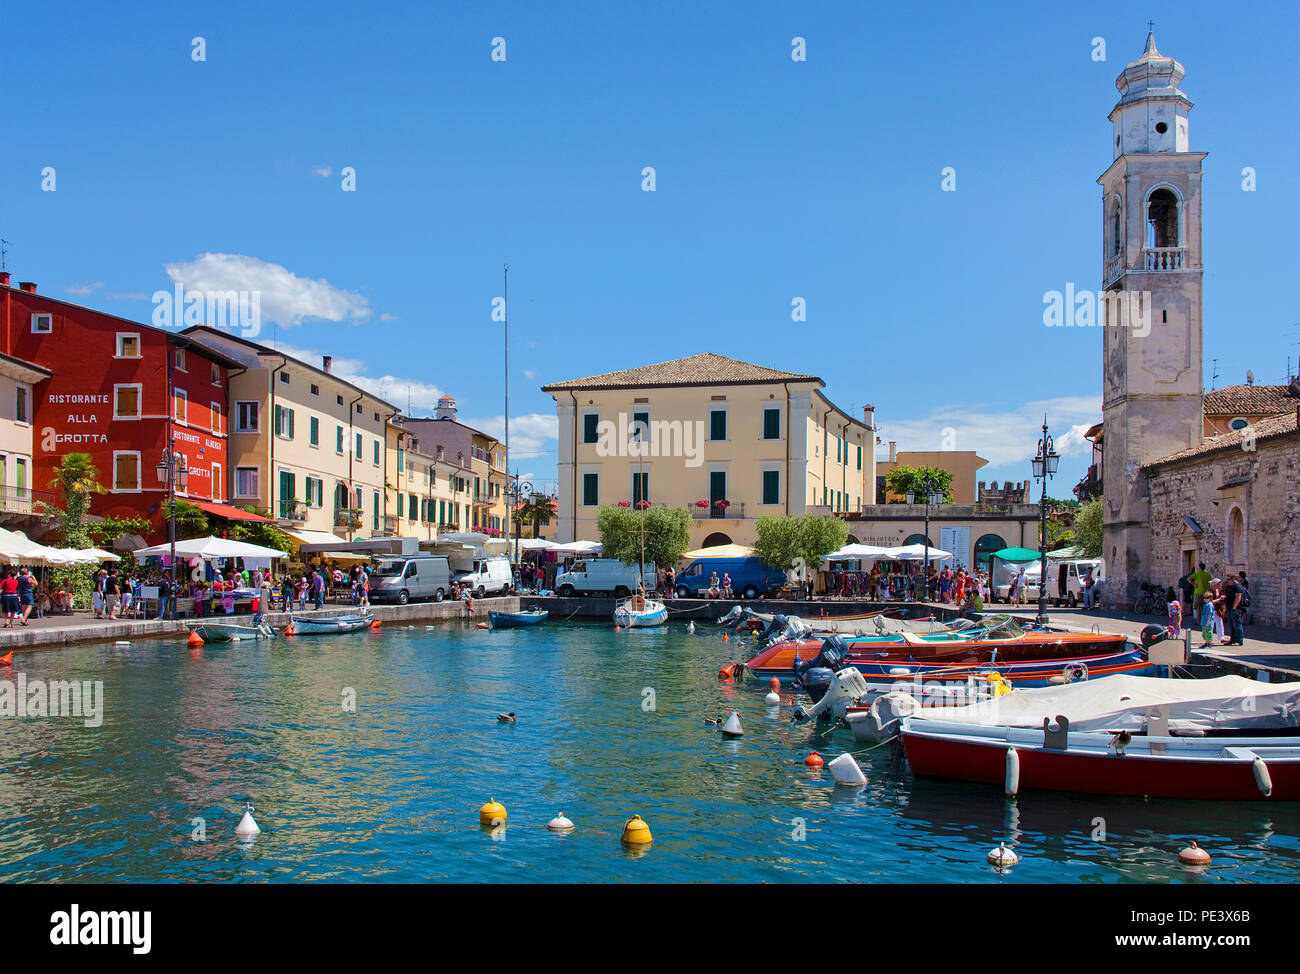 Imbarcazioni presso il porto, San Nicolo chiesa, Lazise, sul lago di Garda, provincia di Verona, Italia Foto Stock